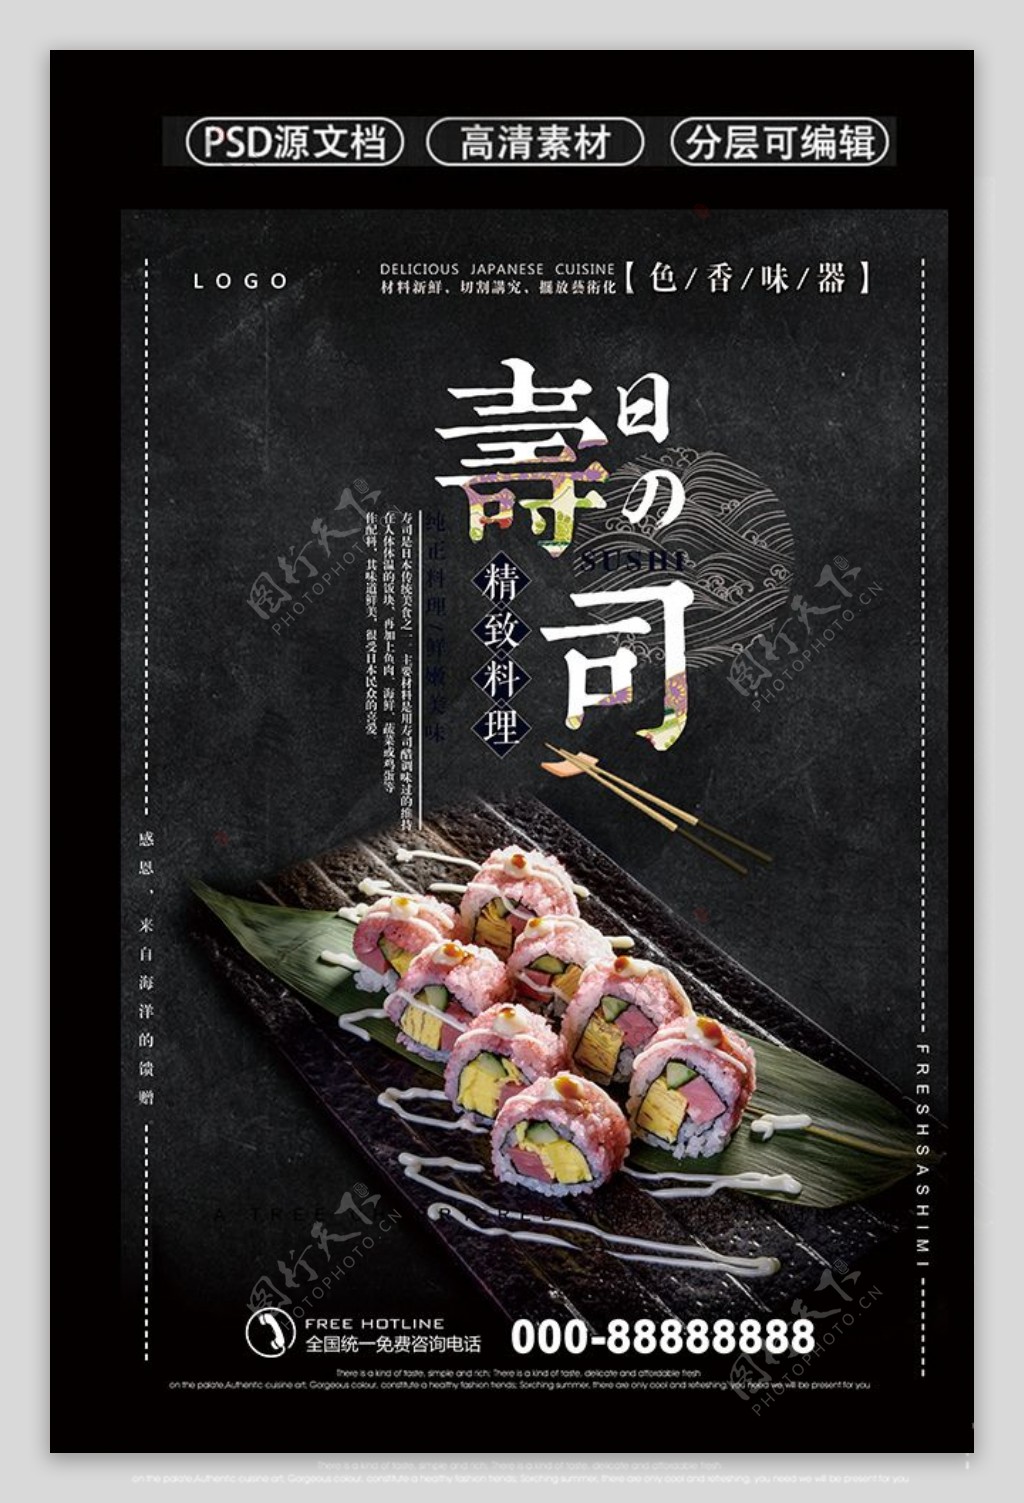 日式寿司店宣传海报设计黑色模板